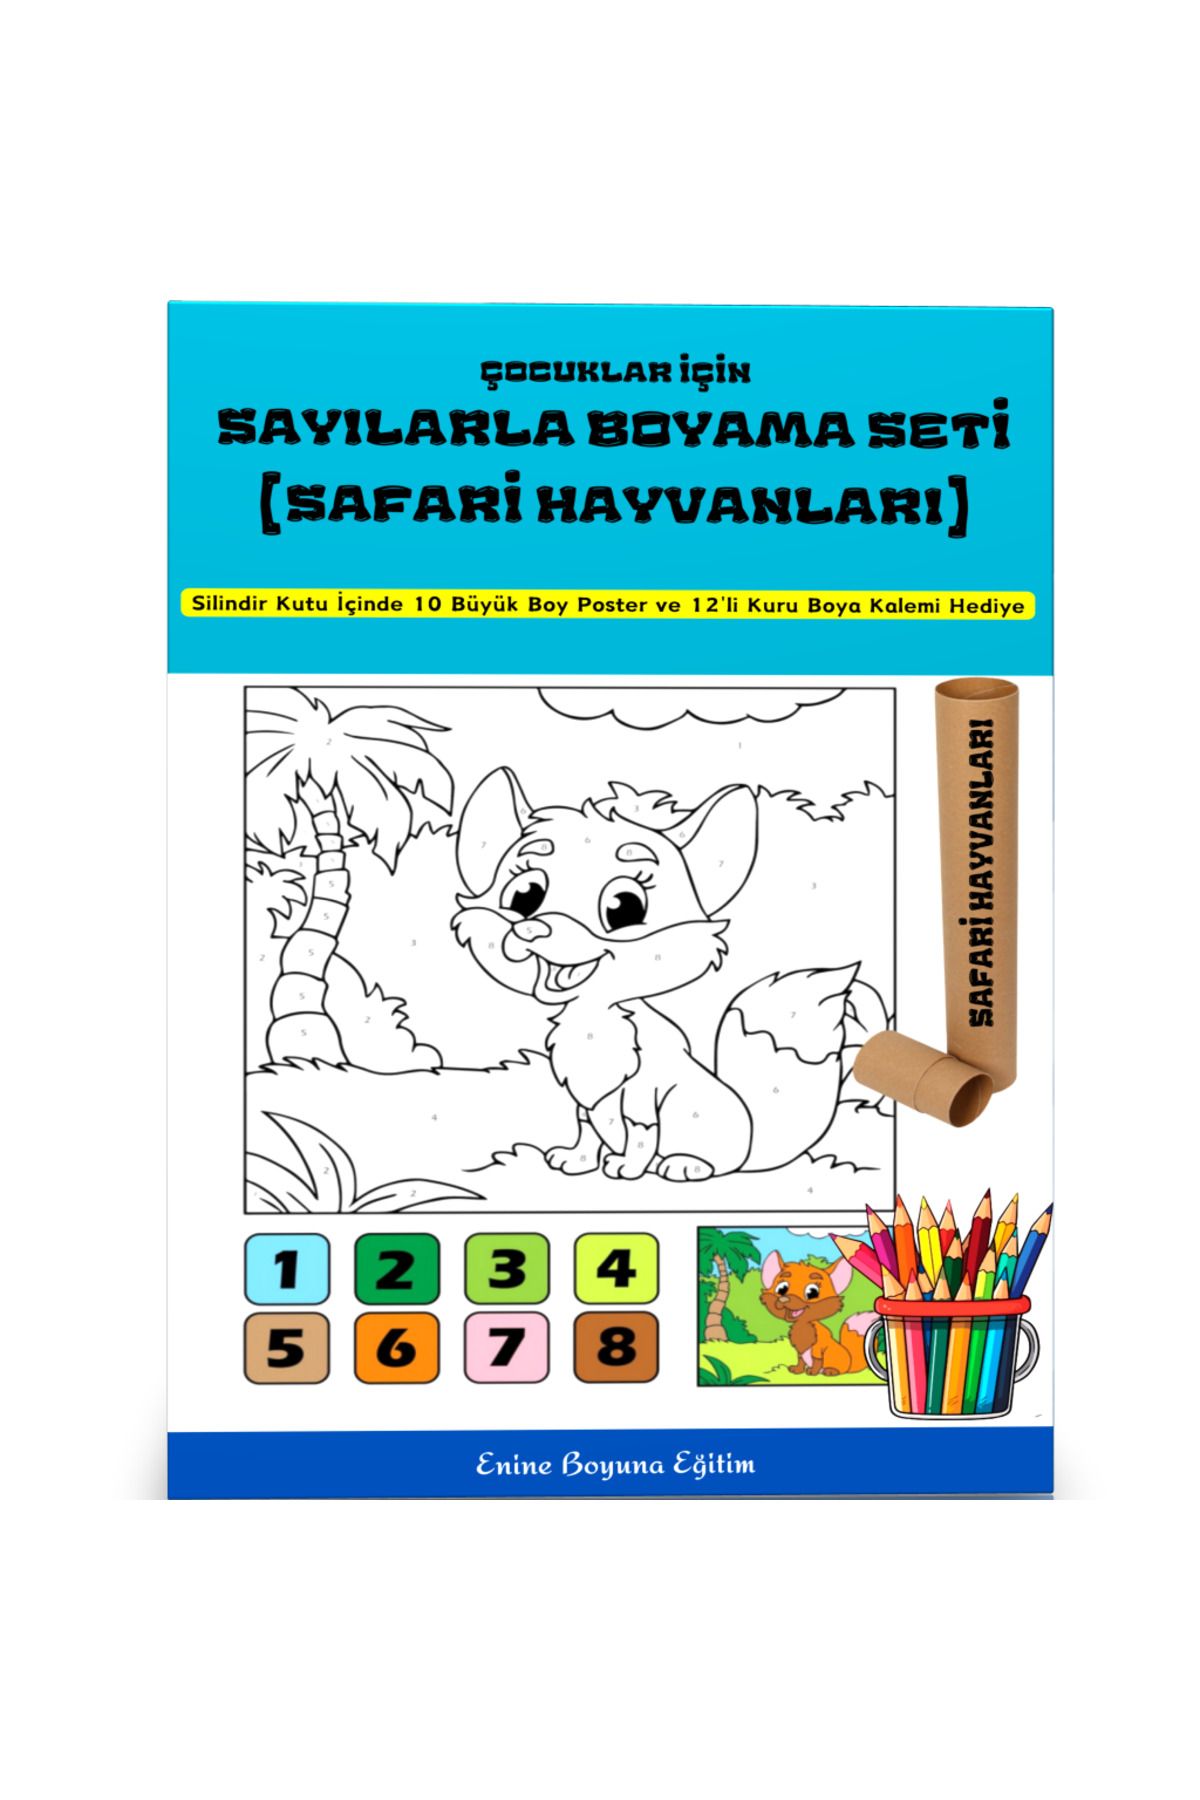 Enine Boyuna Eğitim Çocuklar İçin Sayılarla Boyama Seti (Safari Hayvanlar)